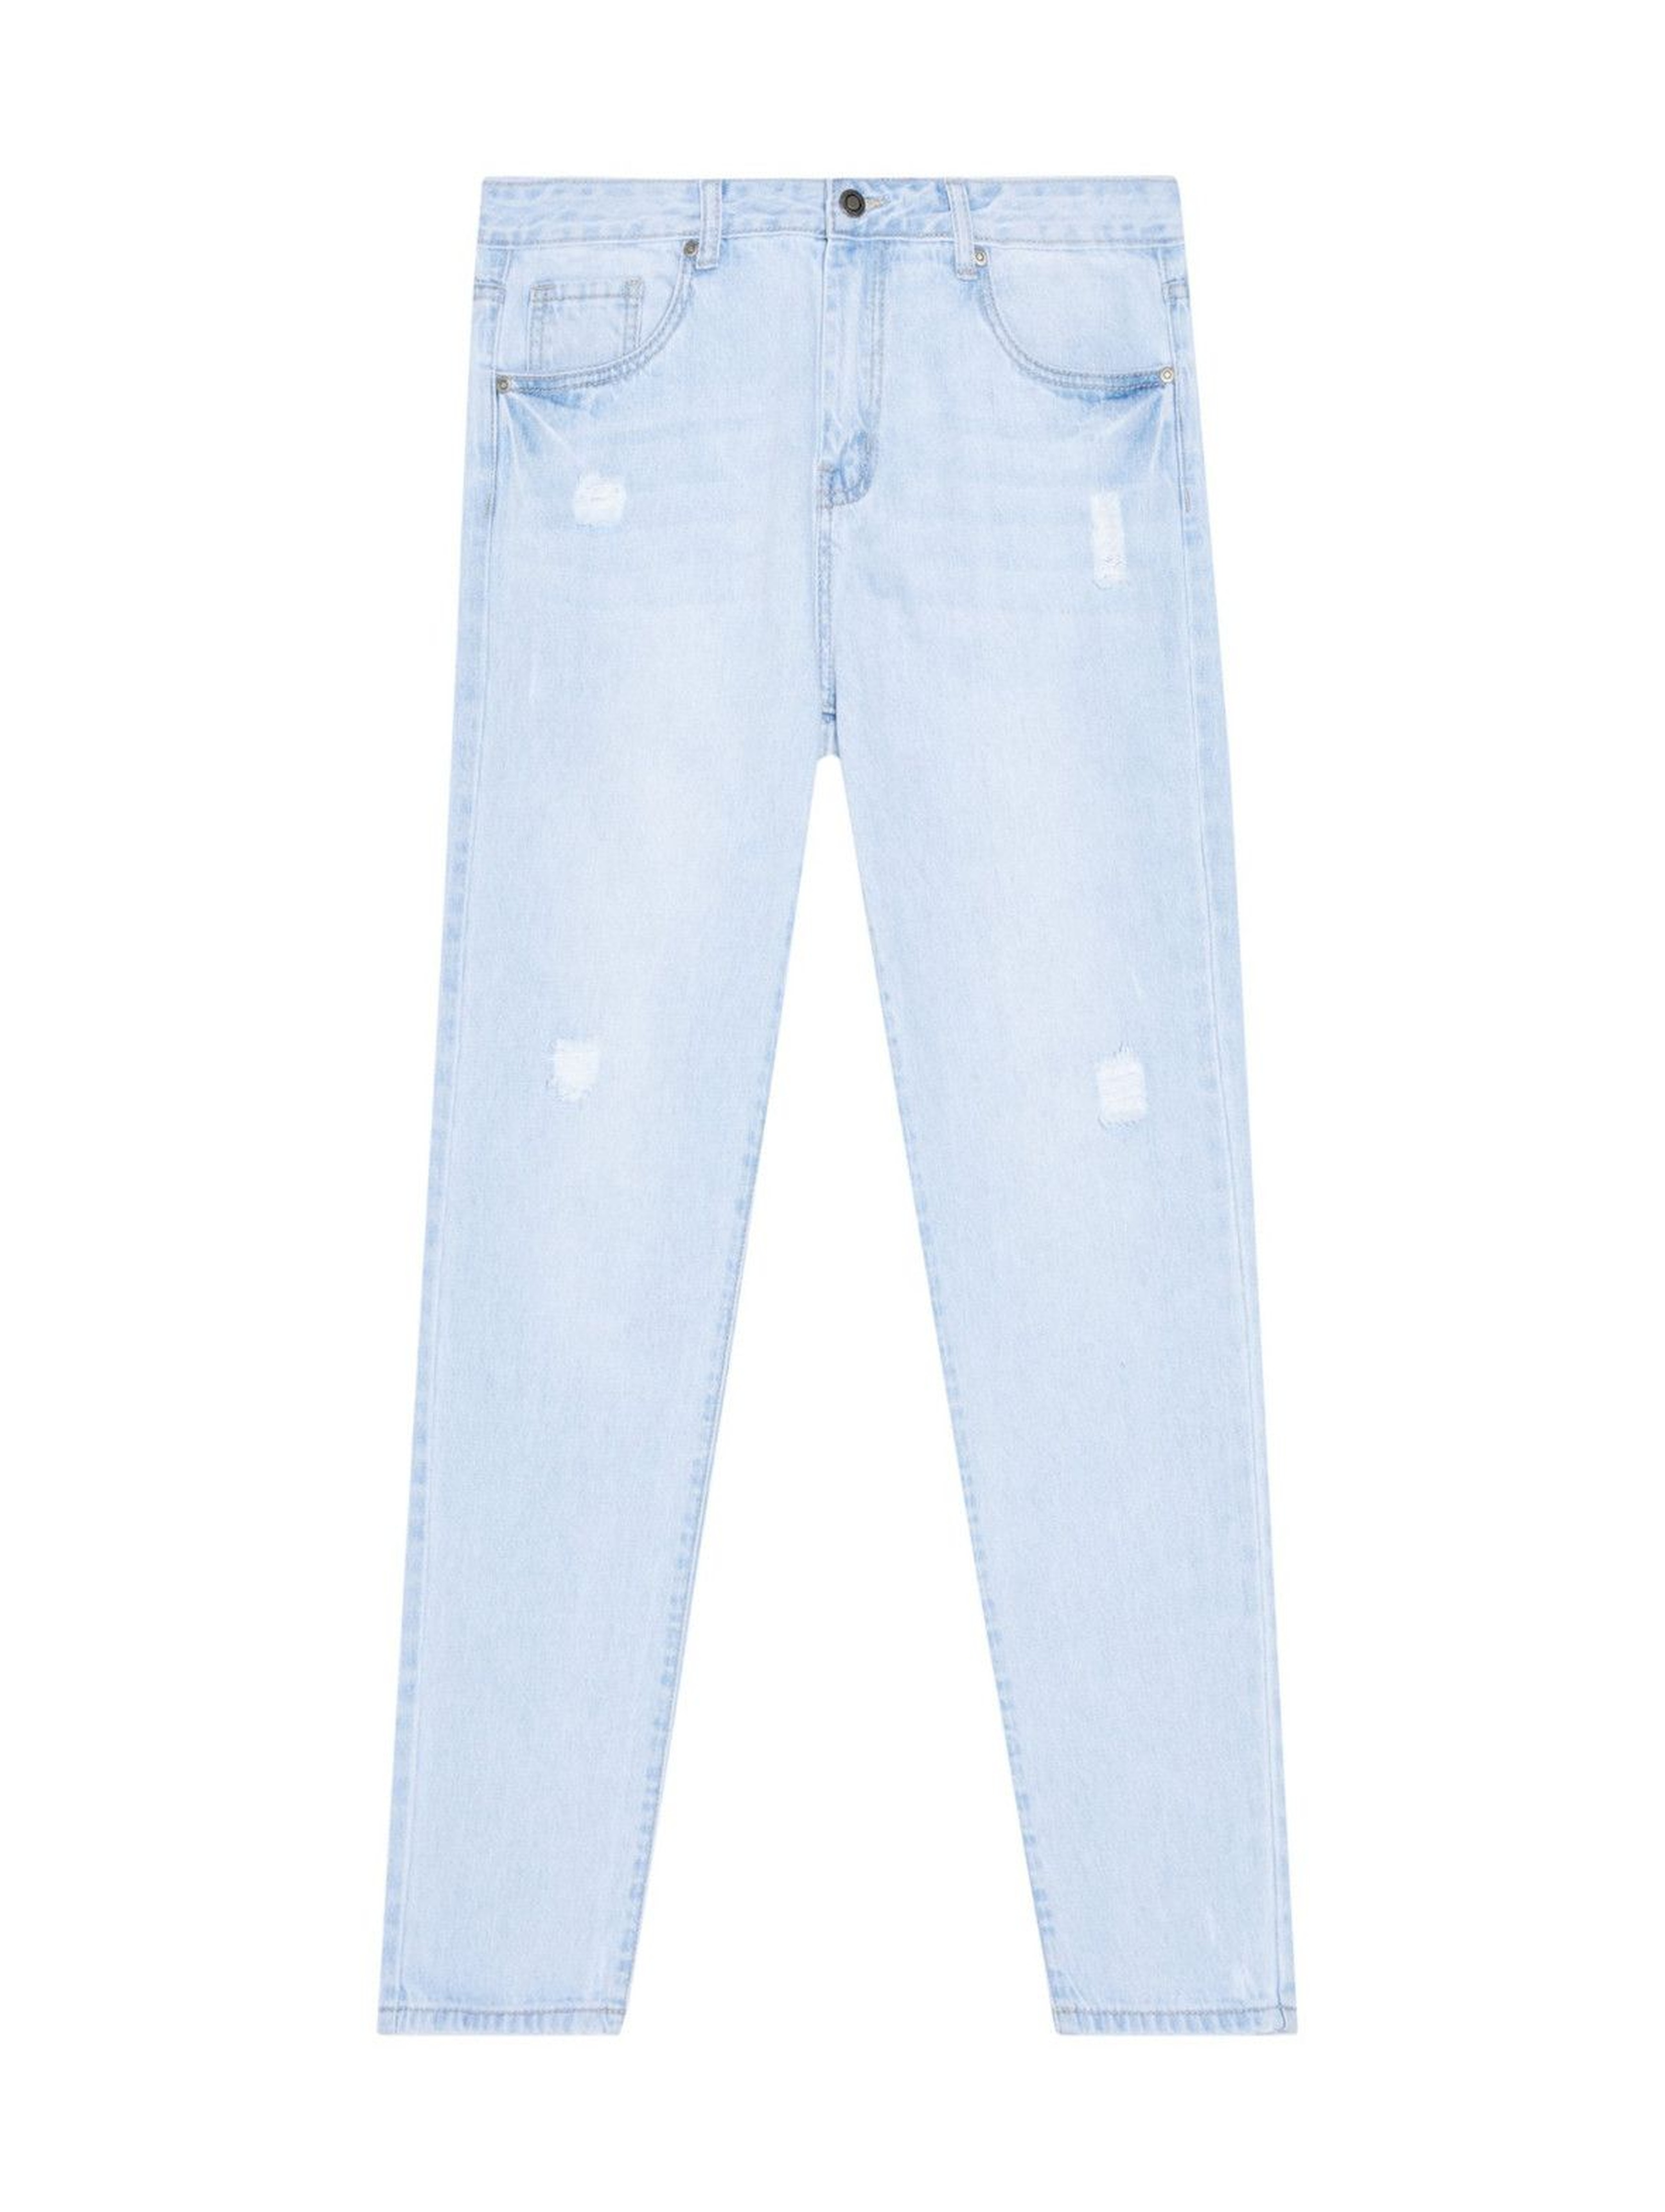 Spodnie jeansowe typu boyfriend z niskim stanem- niebieskie